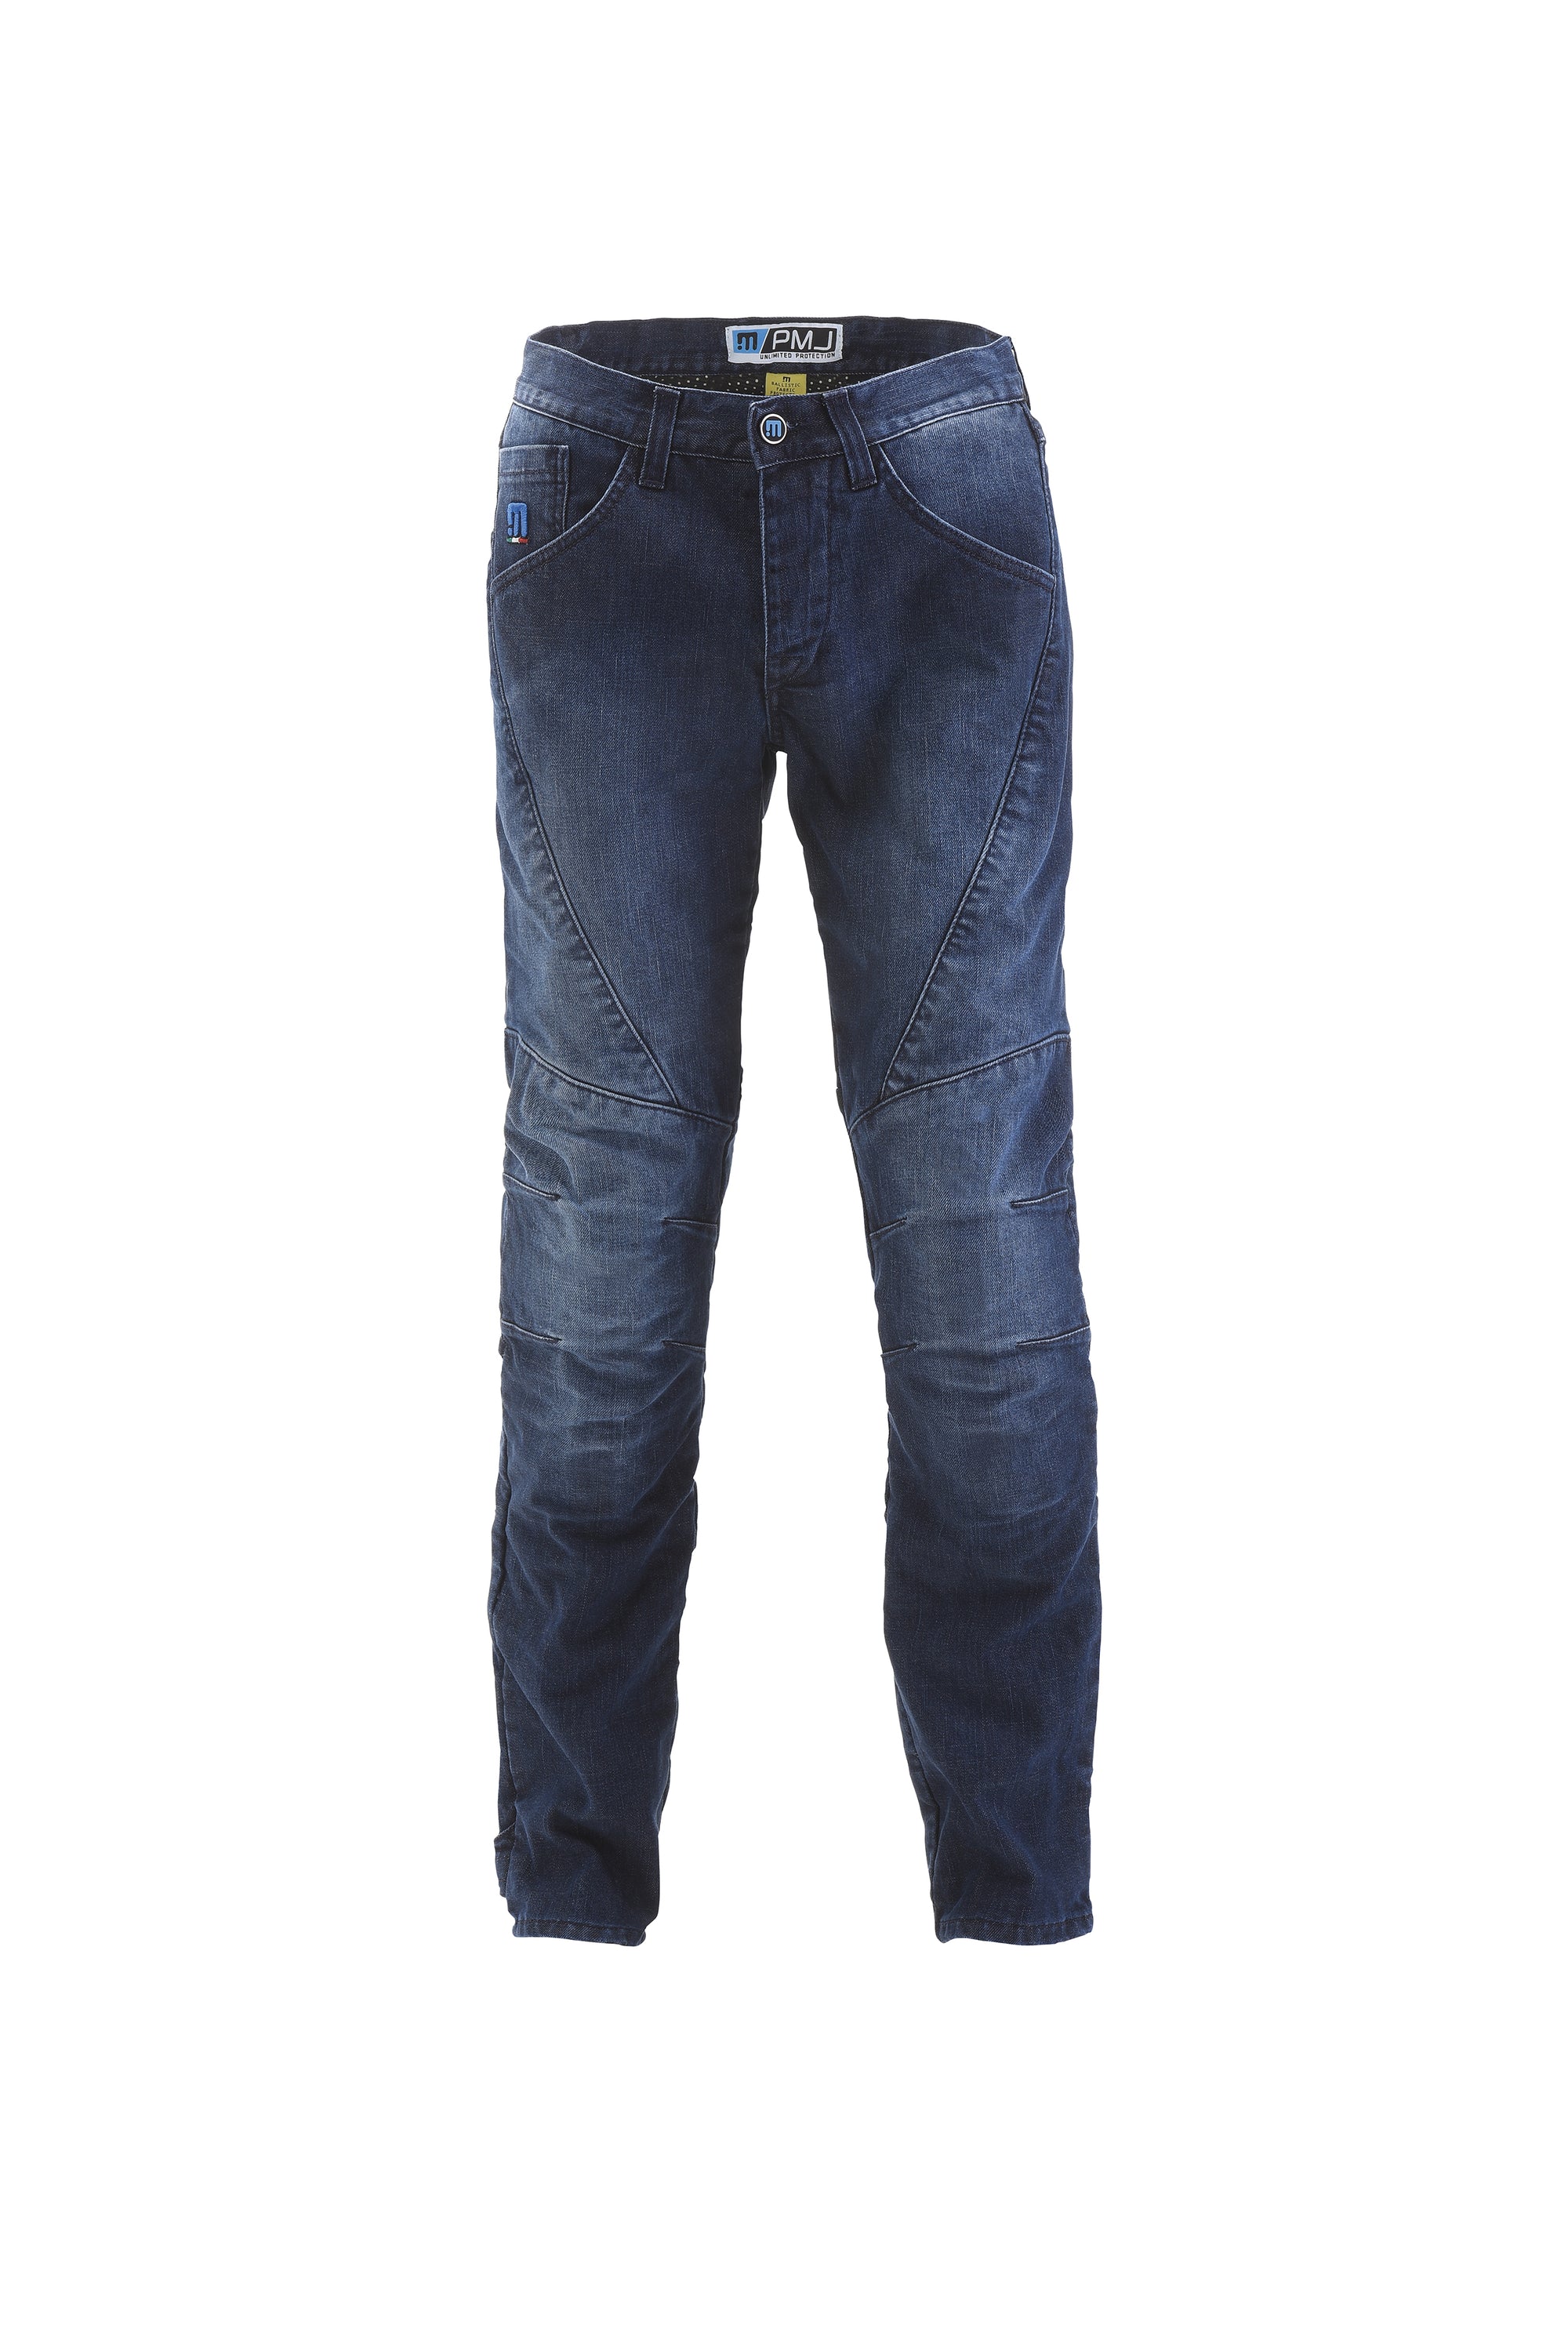 PMJ Titanium Jeans